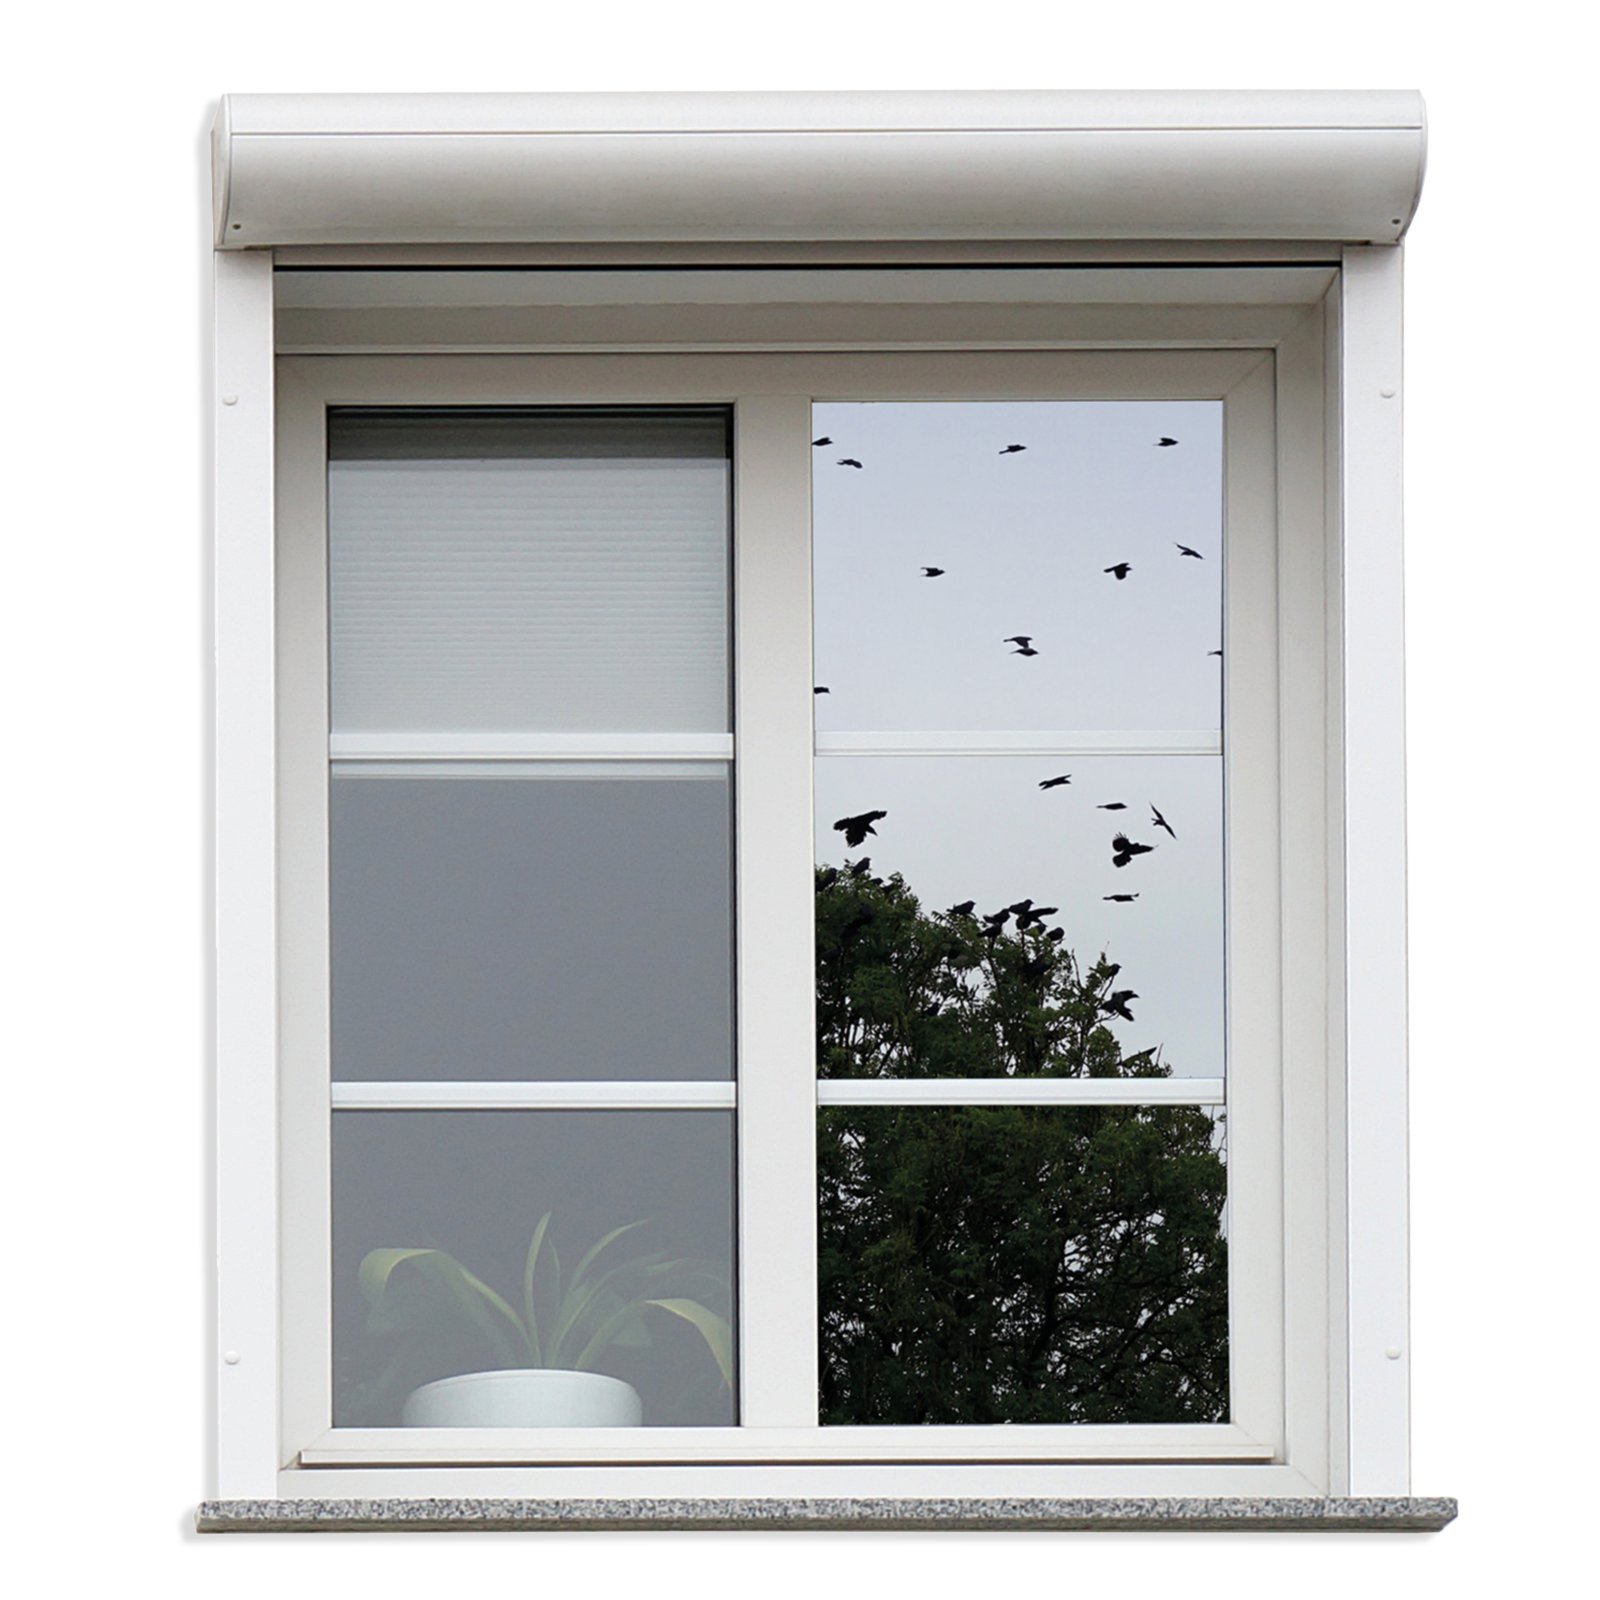 Sichtschutzfolie für Fenster kaufen